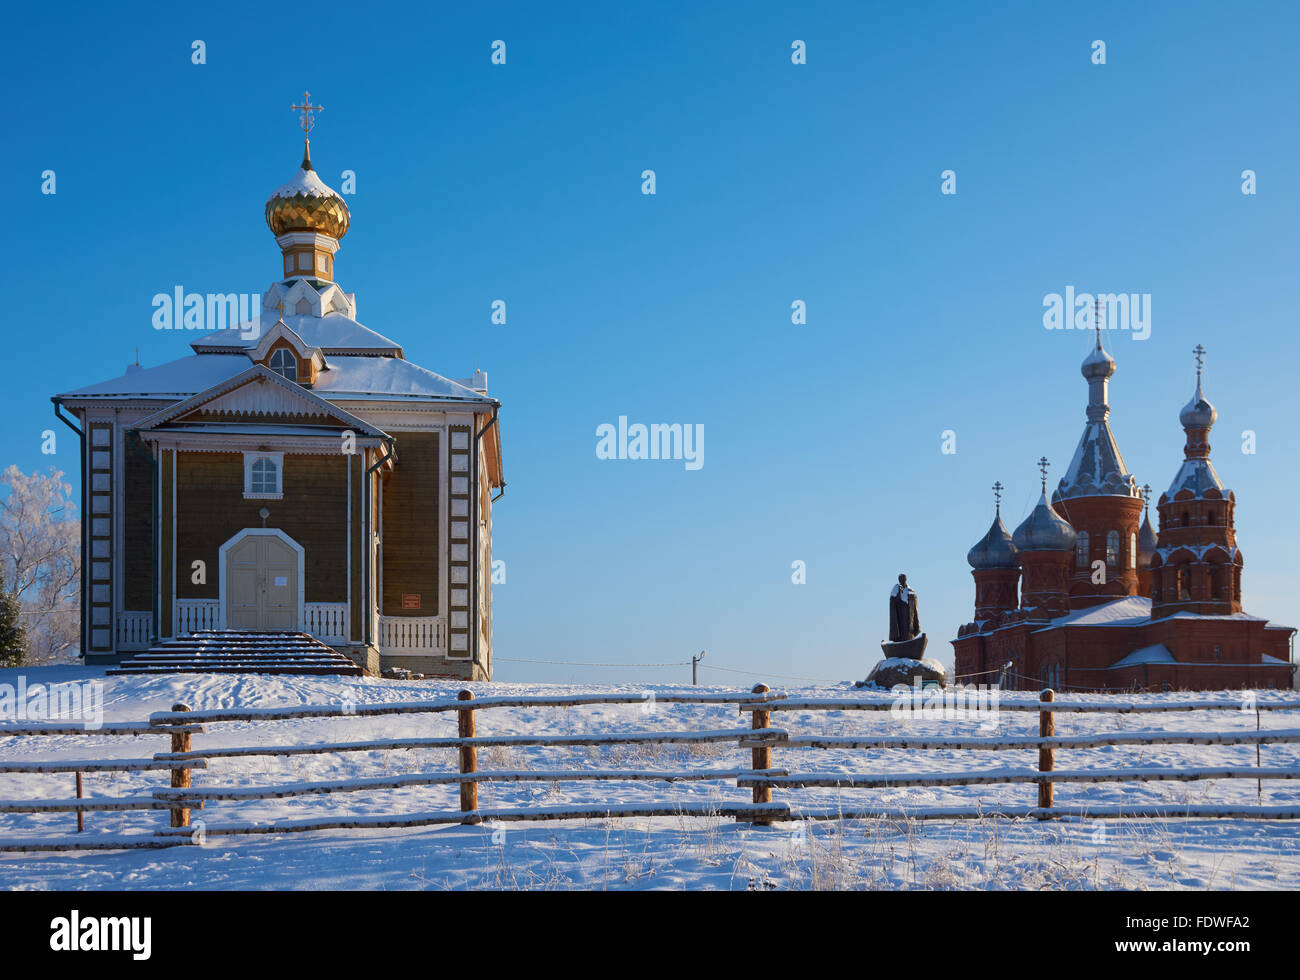 Un monumento, una chiesa in legno e una chiesa brcick in Volgoverkhovye, Regione di Tver, Russia, dove il fiume Volga inizia a. Foto Stock